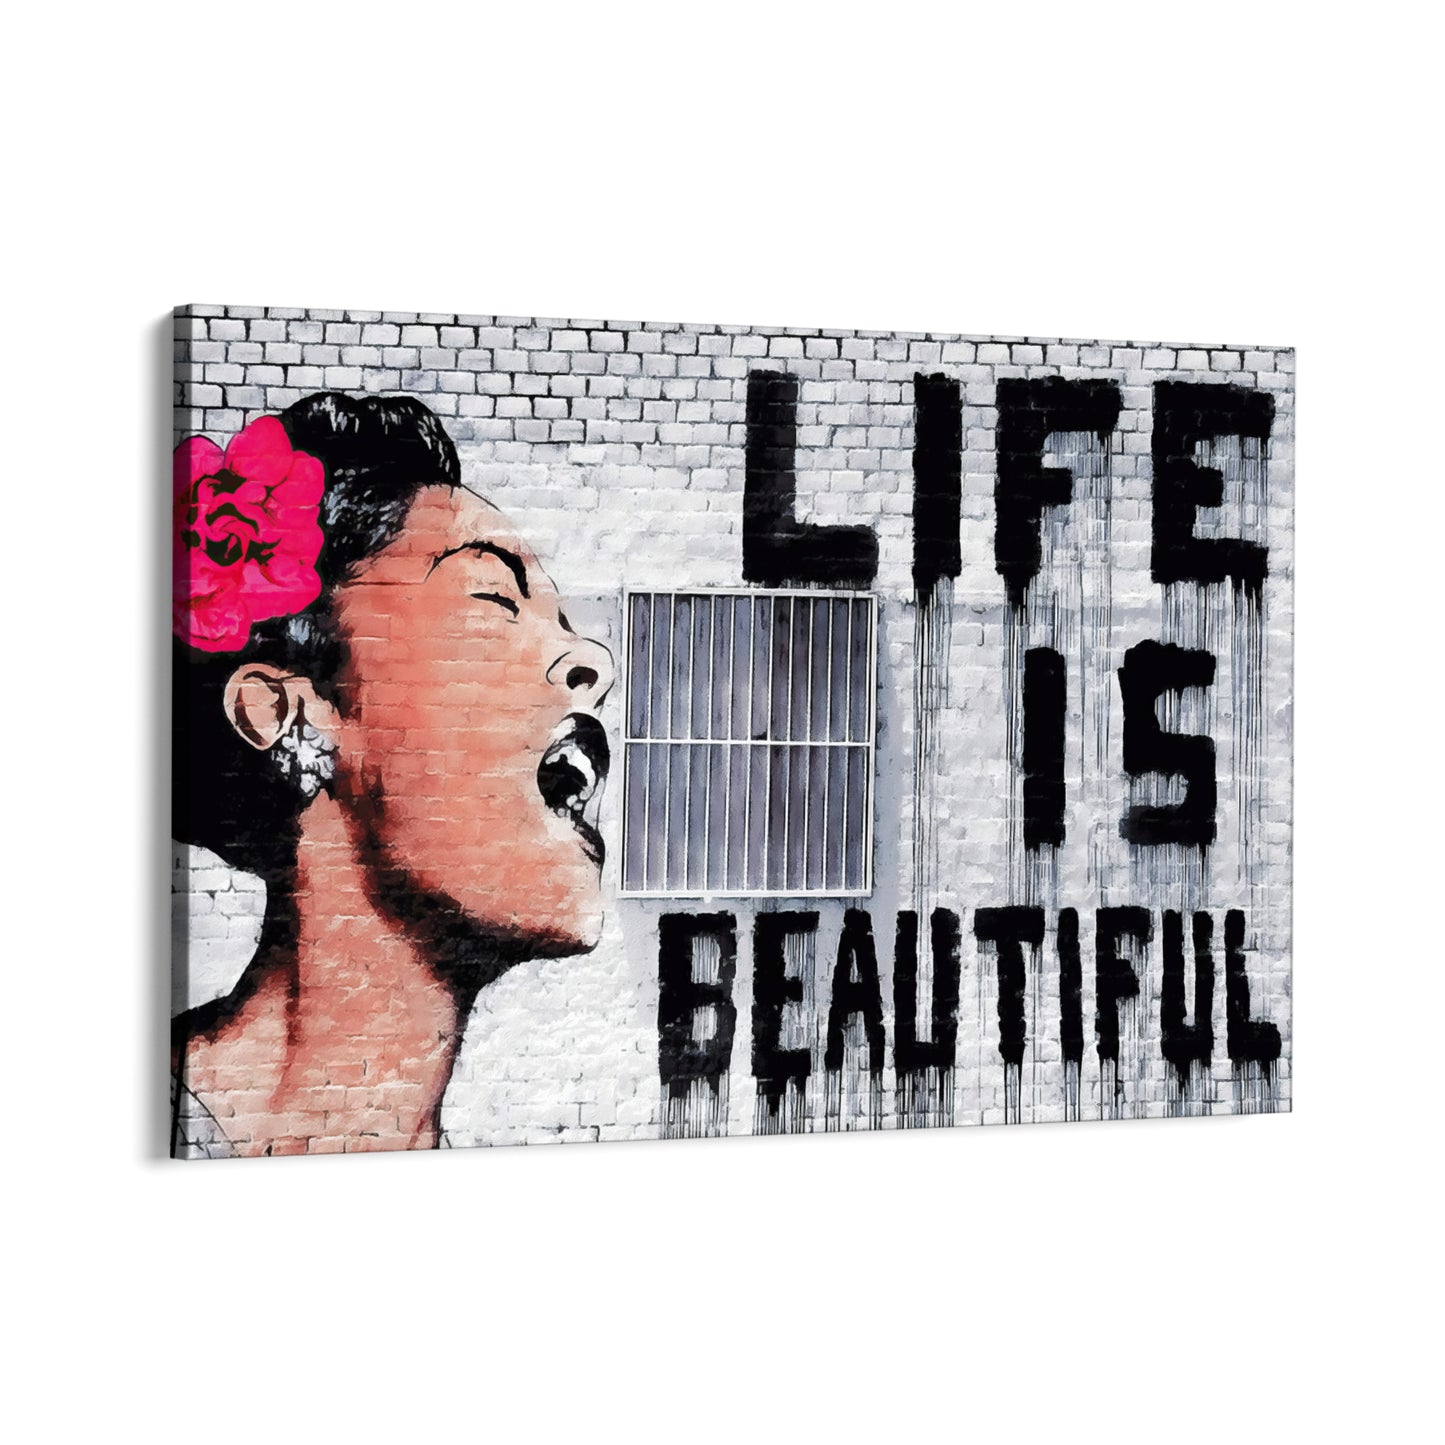 Het leven is mooi, Banksy